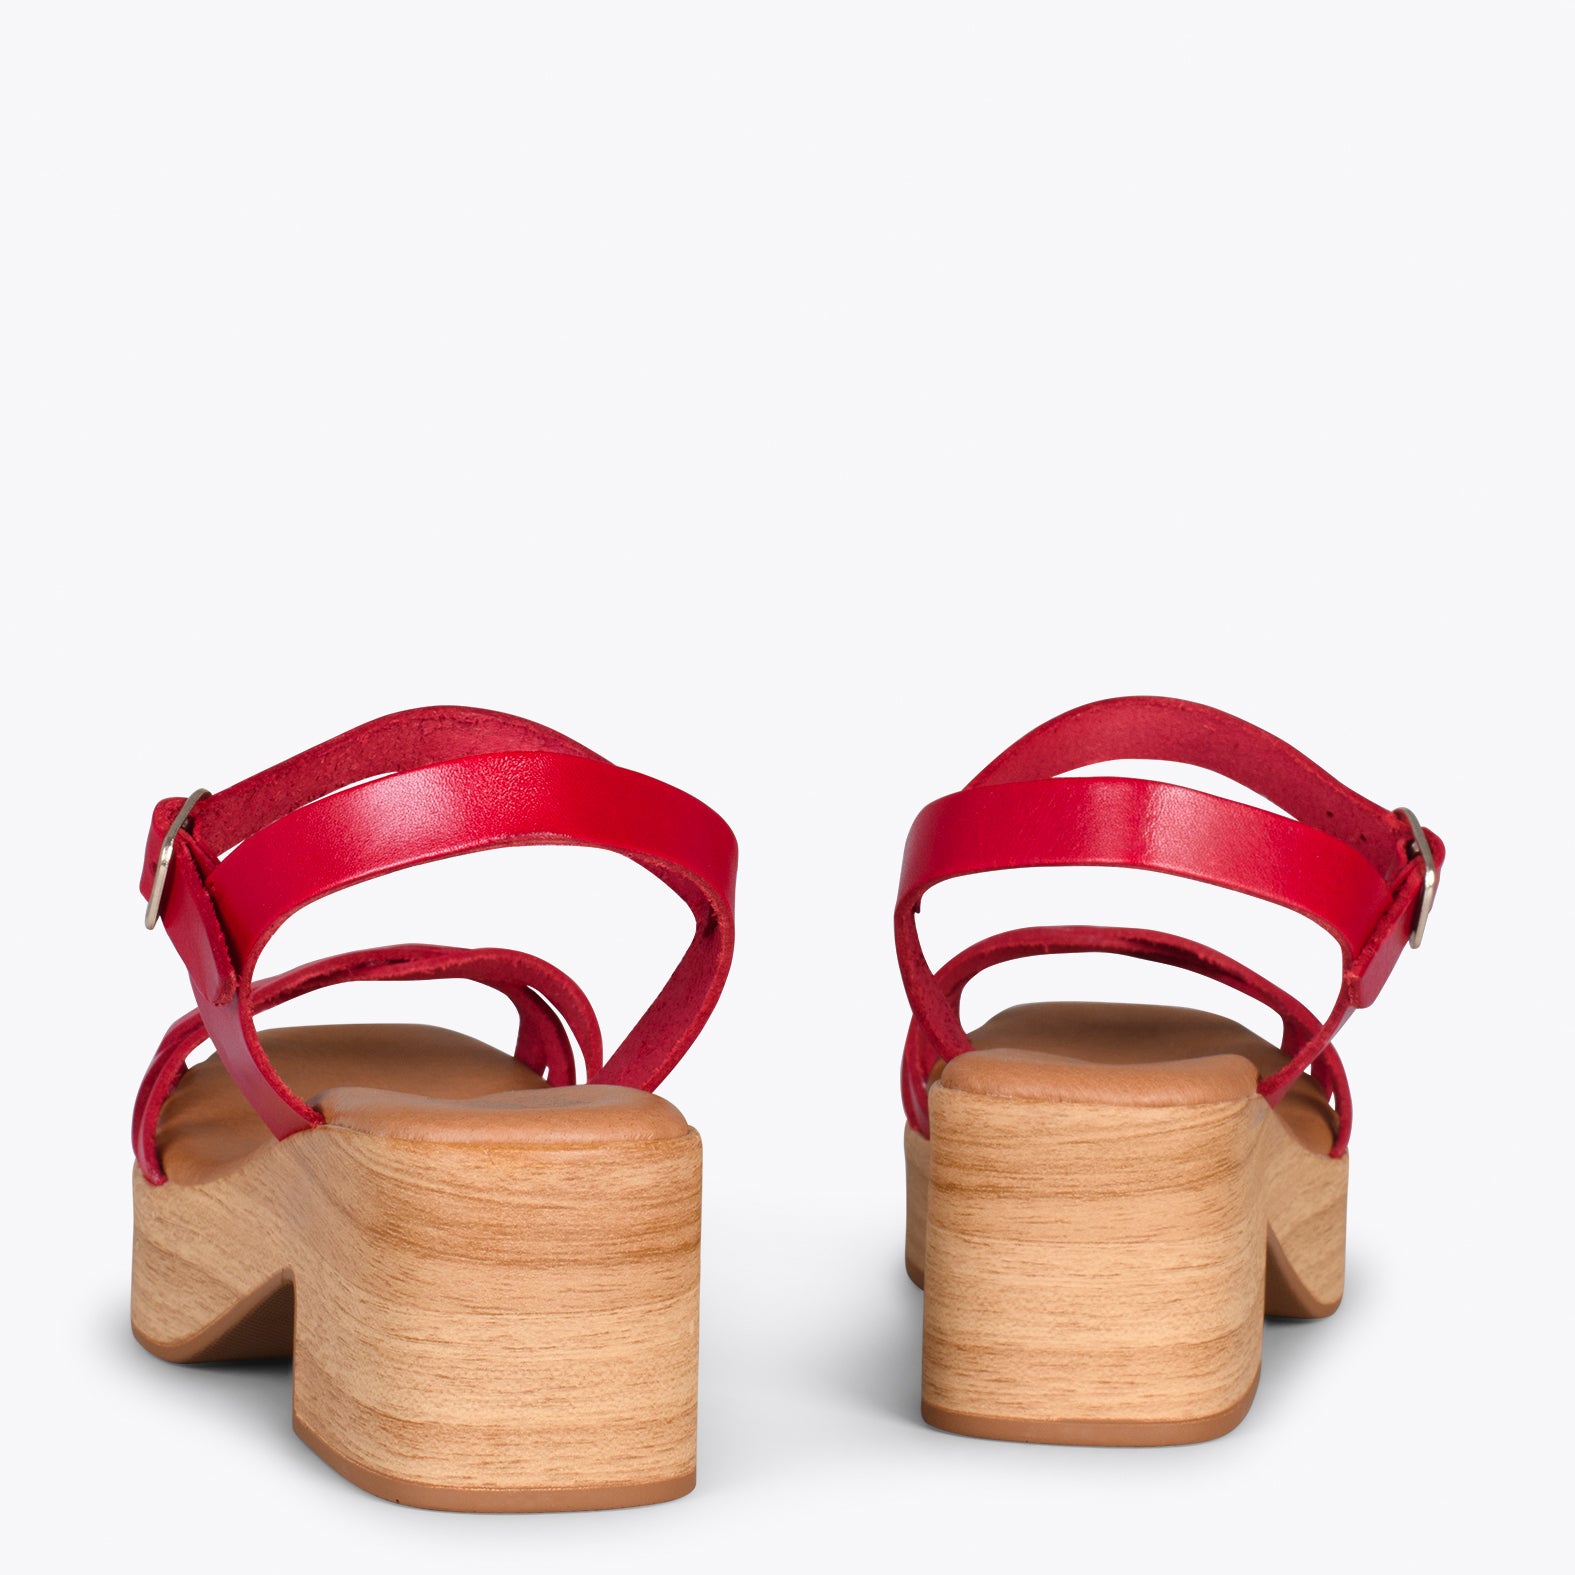 WOOD – Sandalias imitación madera con tiras ROJO